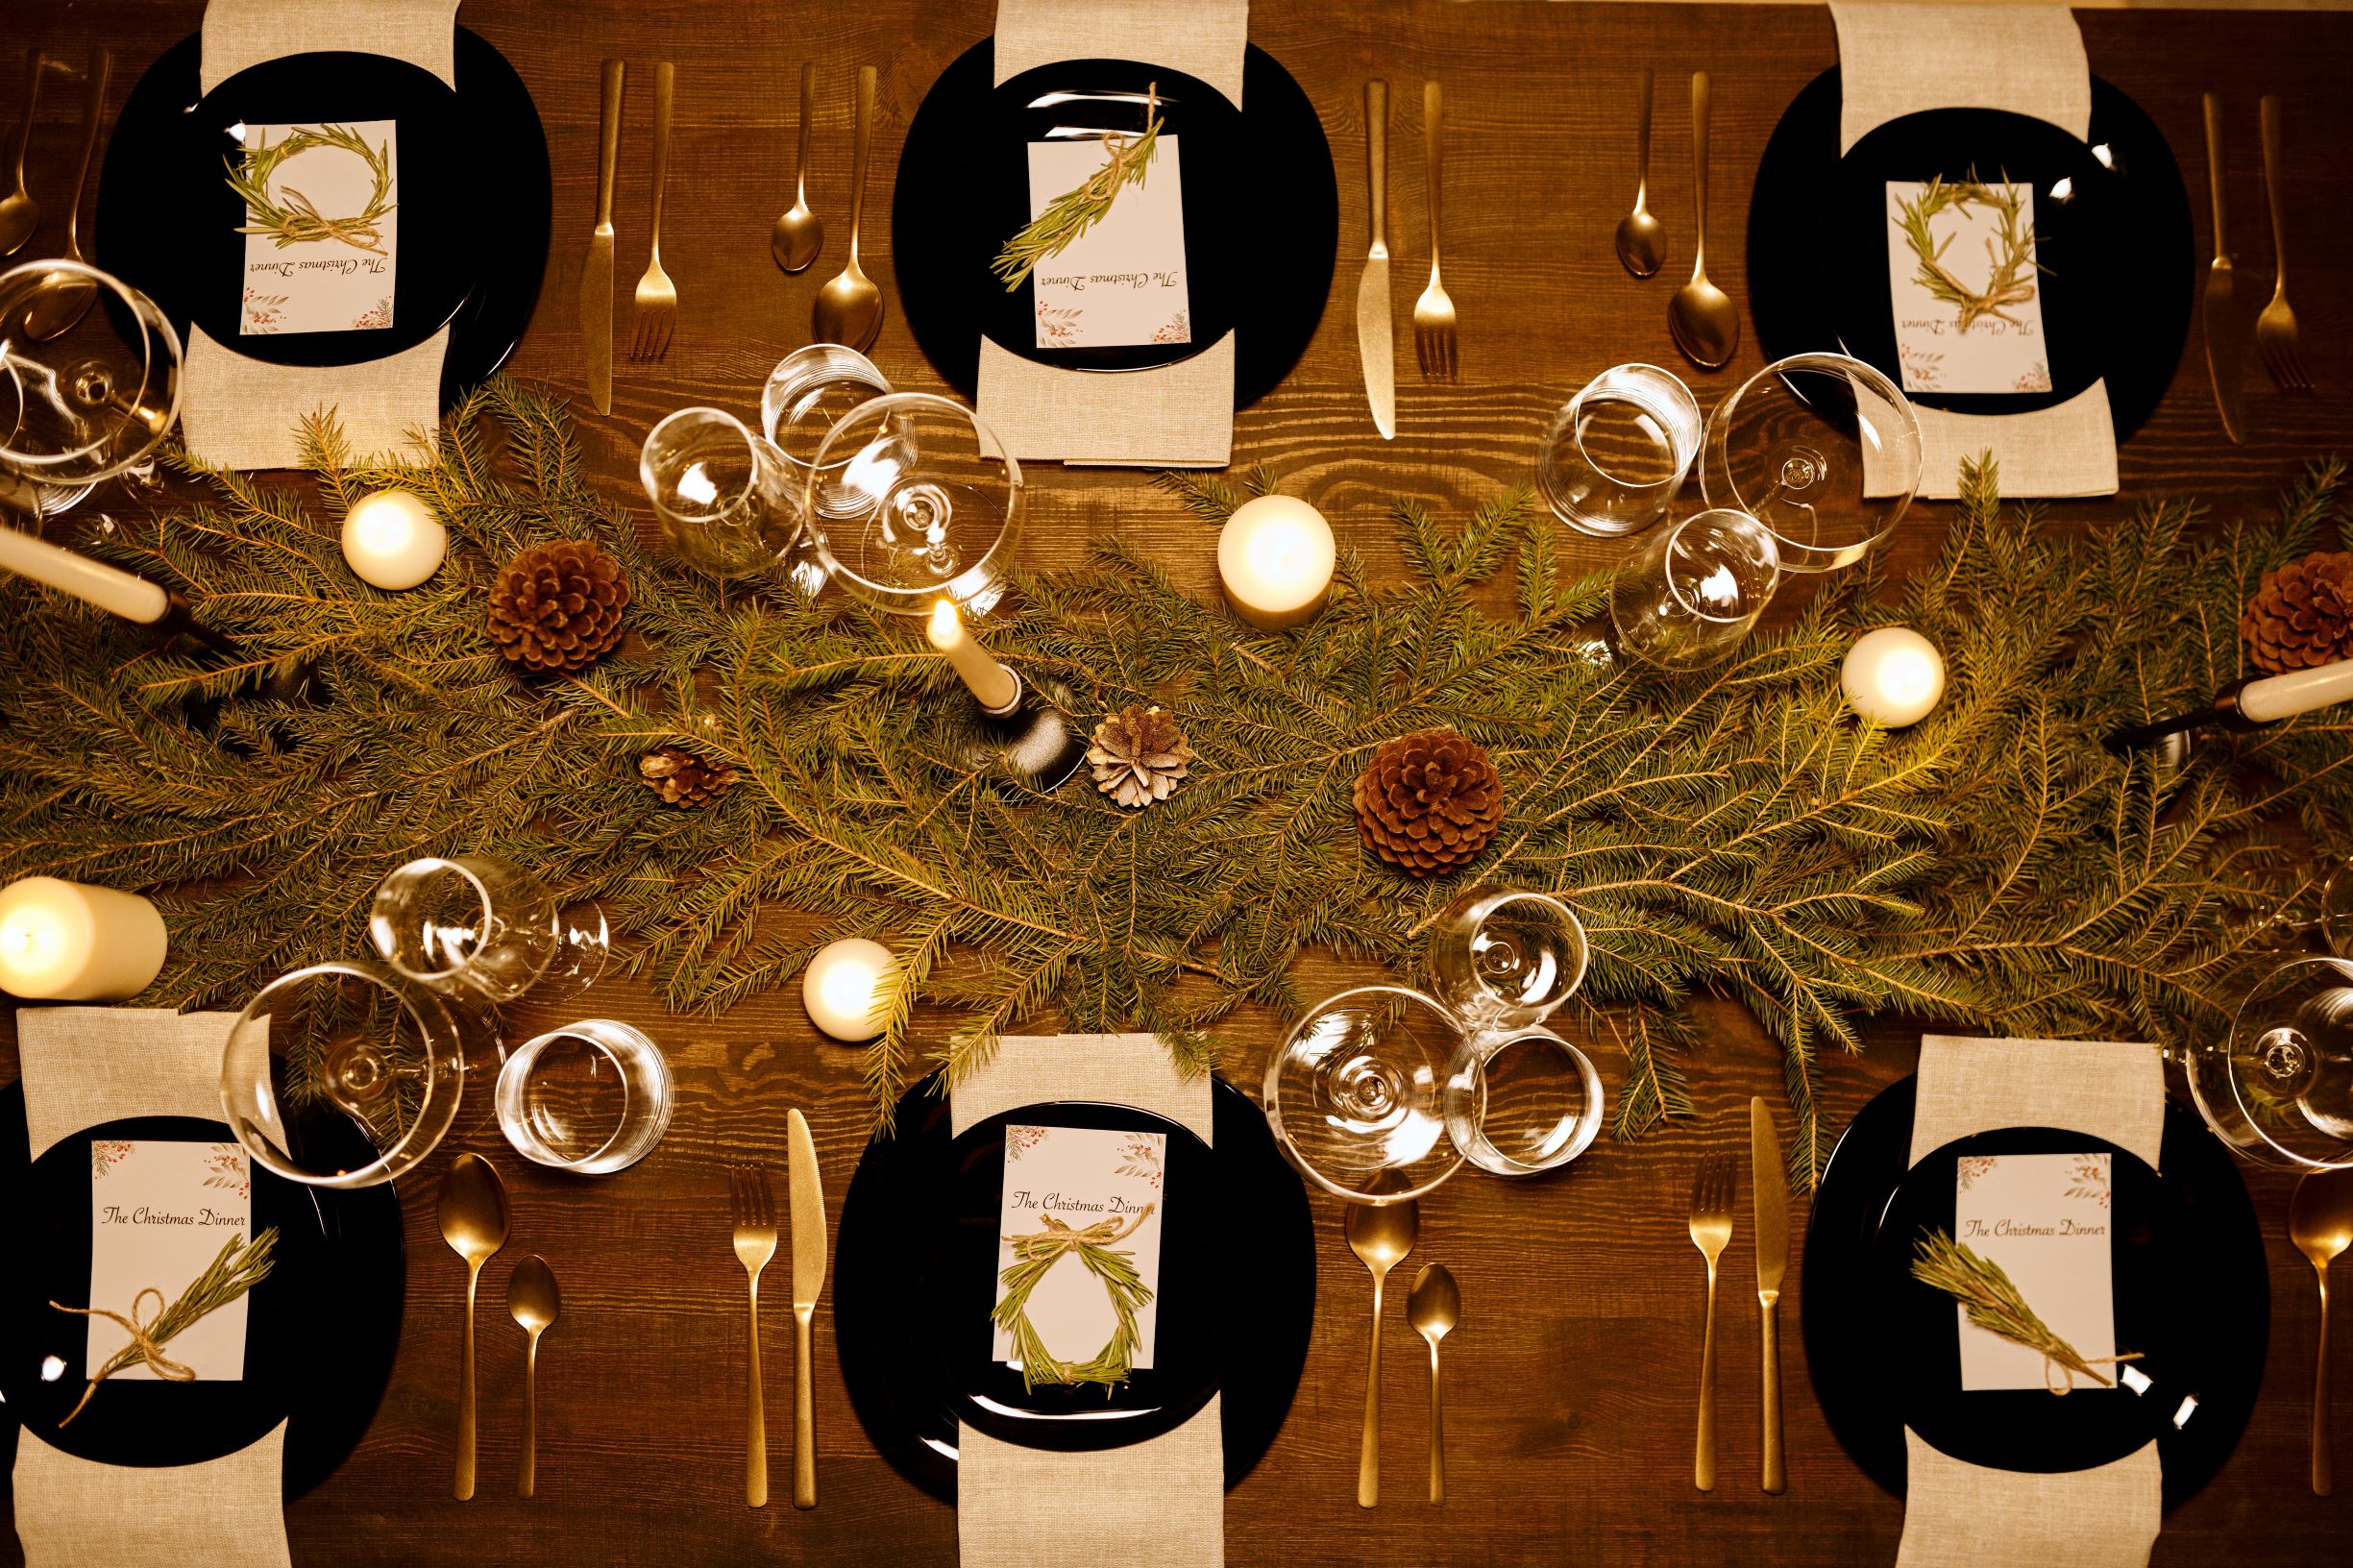 Δύο Chef και ένας Sommelier μάς δίνουν ιδέες (και συνταγές) για το χριστουγεννιάτικο τραπέζι